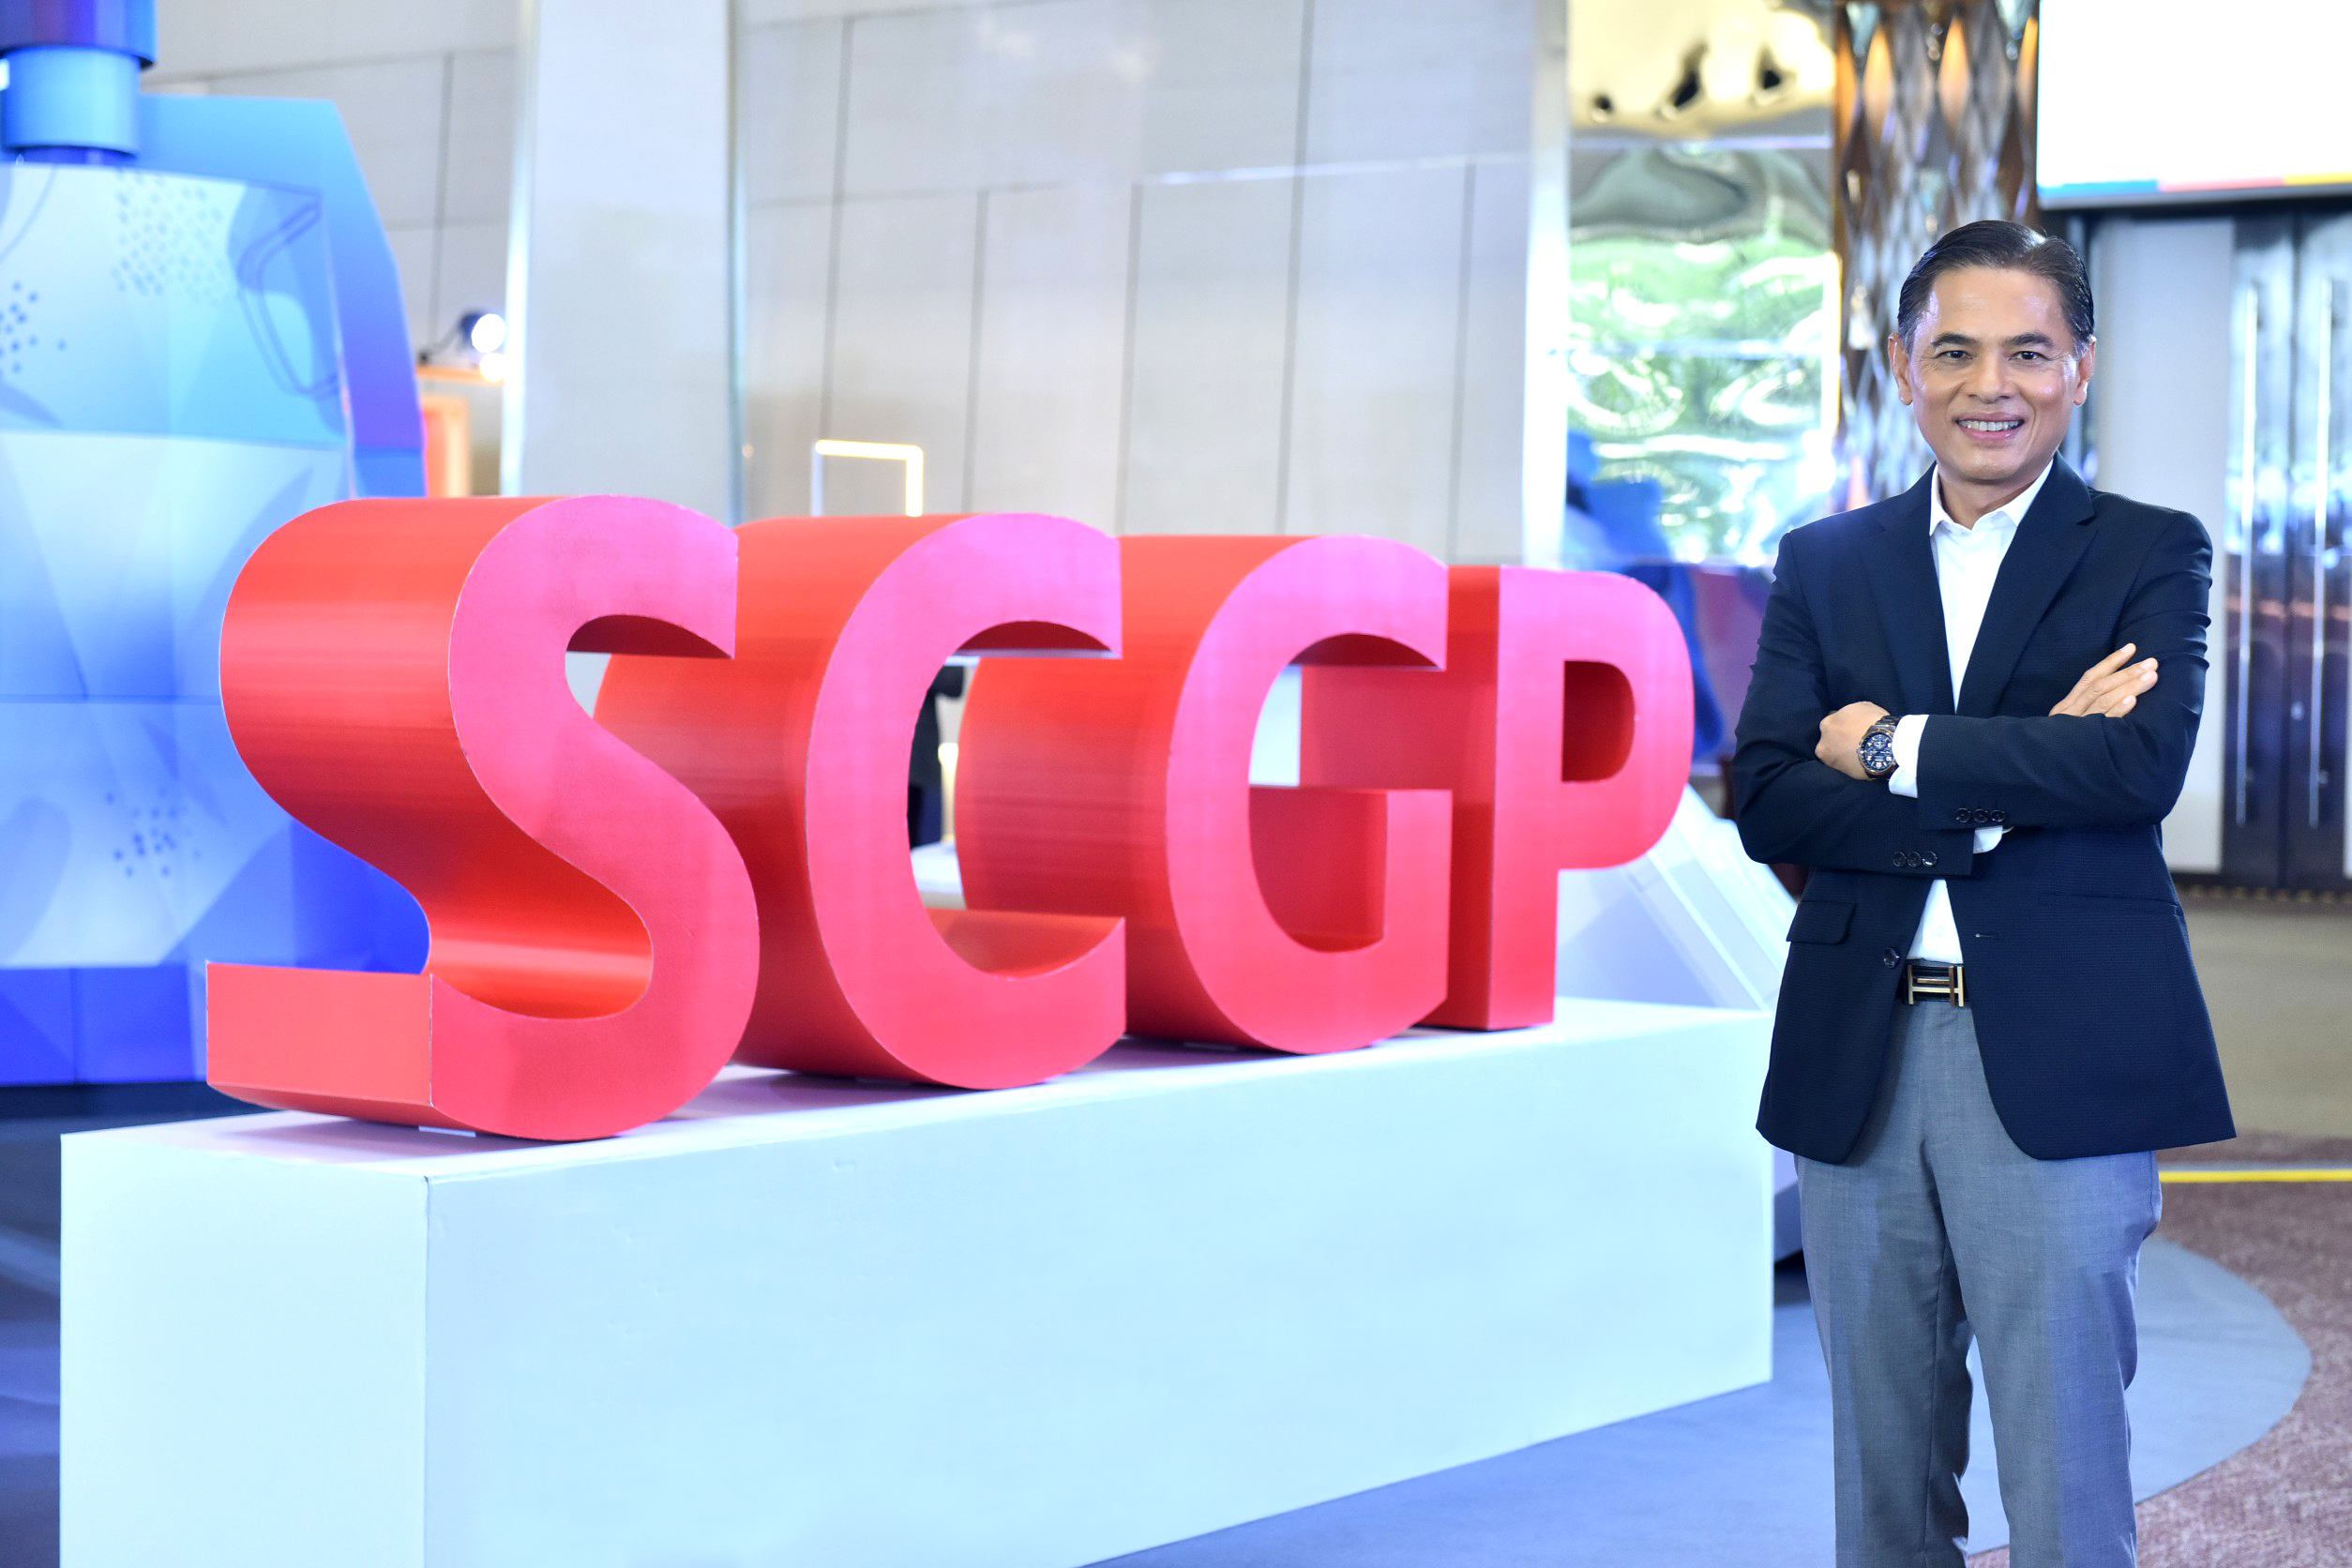 SCGP ปิดการขายหุ้น IPO ครั้งประวัติศาสตร์ นักลงทุนตอบรับดีเยี่ยม